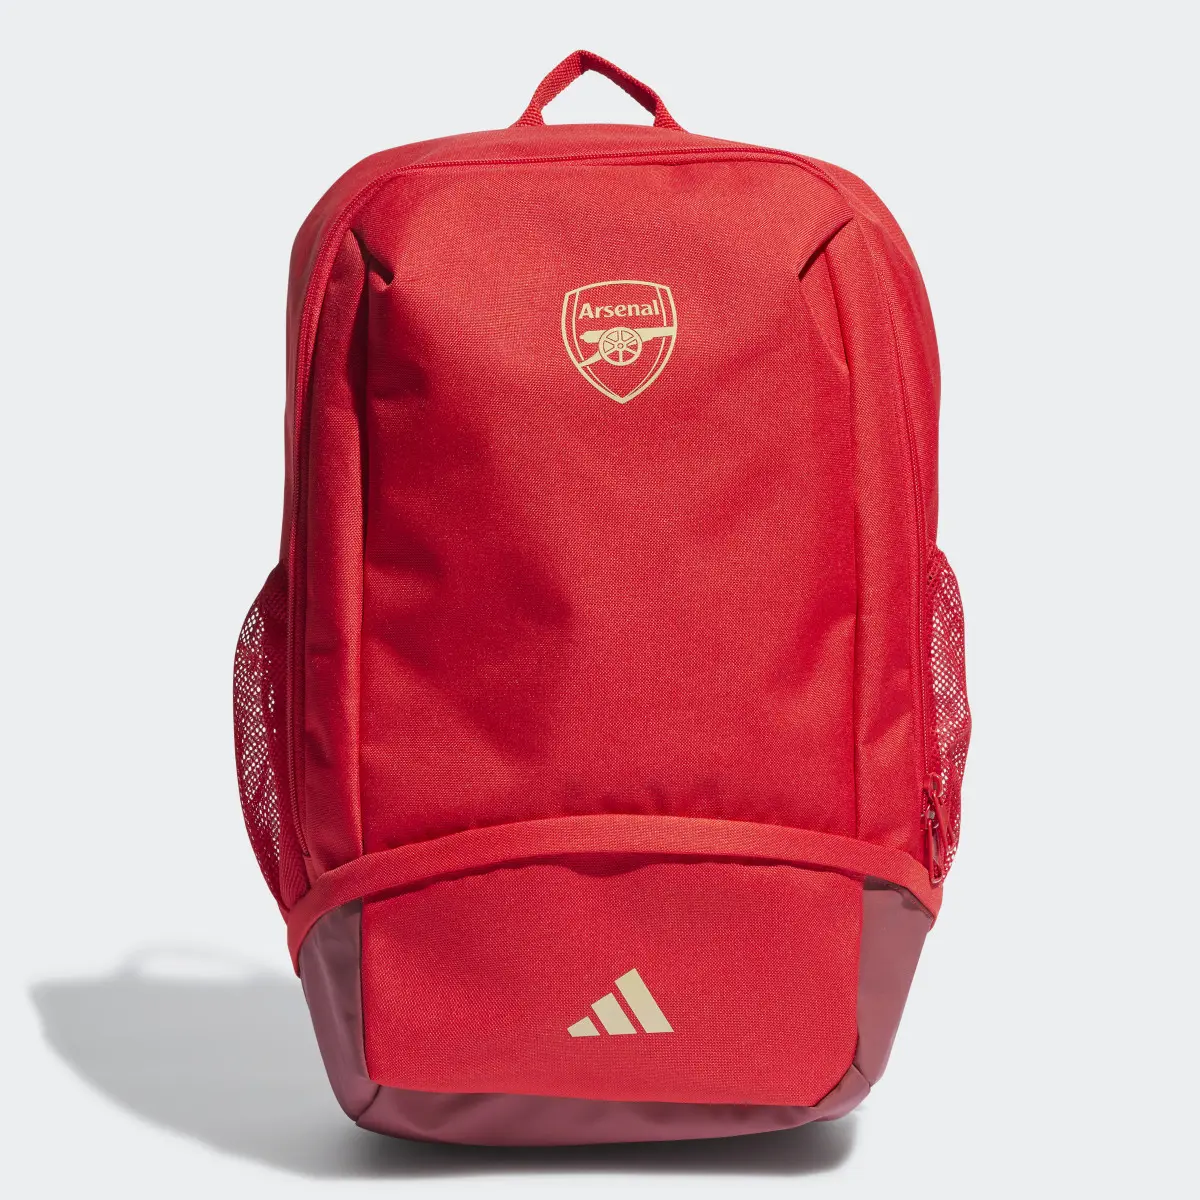 Adidas Arsenal Backpack. 2